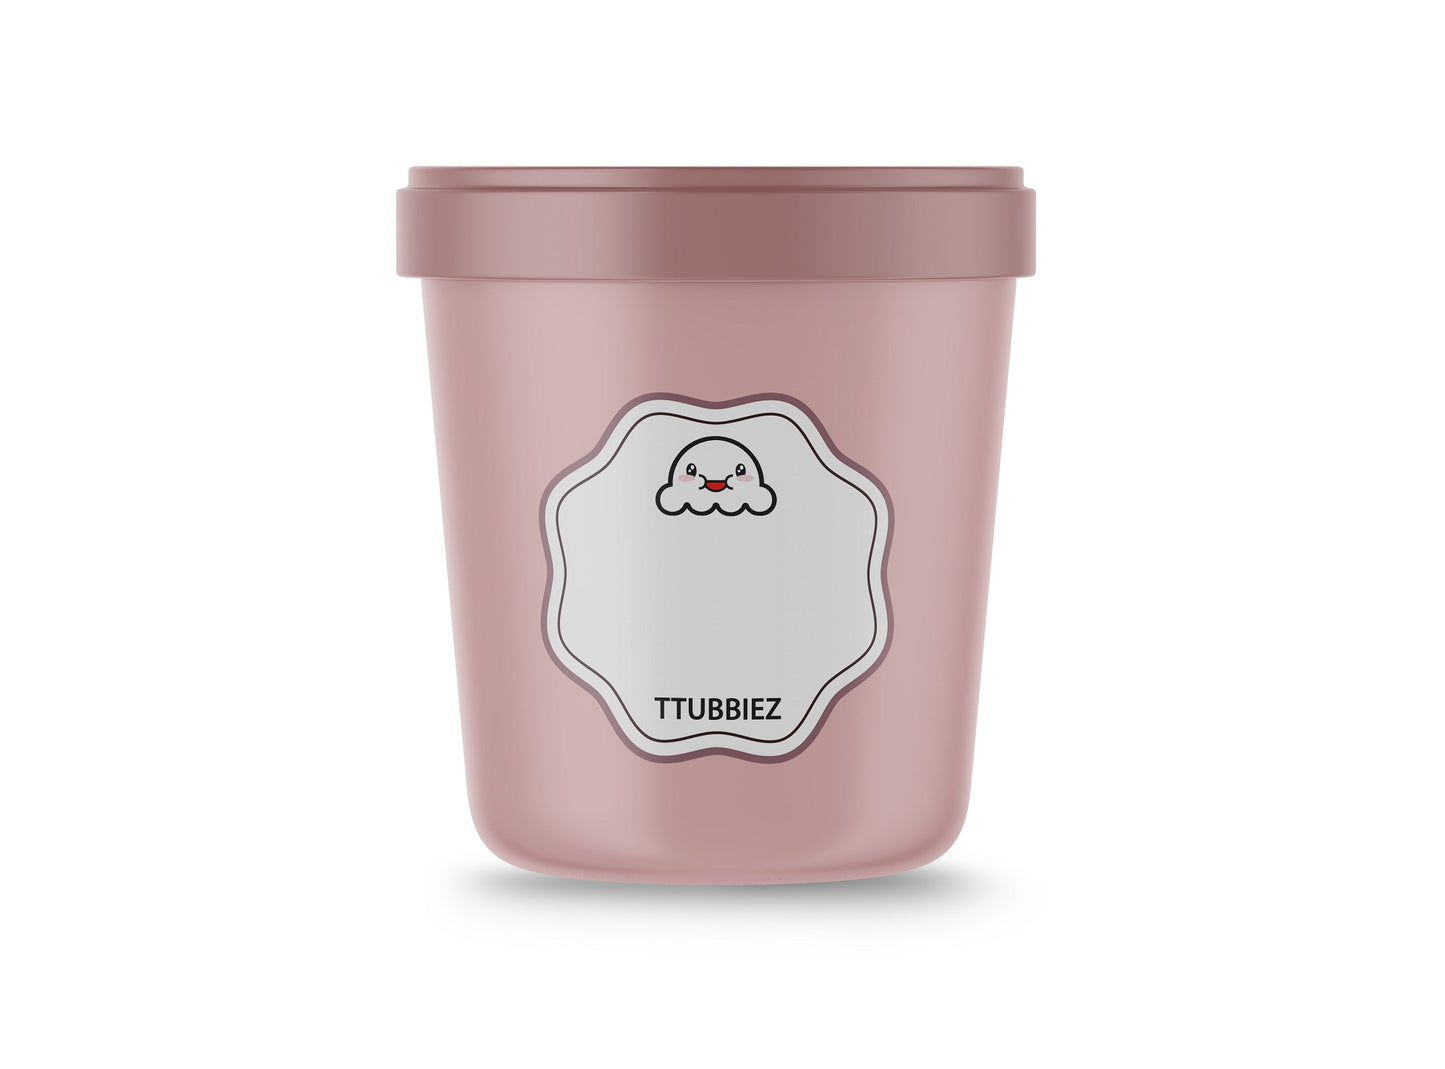  TTUBBIEZ Ice Cream Containers (2 Pack - 1 Quart Each), Ice  Cream Containers for Homemade Ice Cream, Ice Cream Storage Containers, 1 Quart  Freezer Containers for Ice Cream Storage - Mint